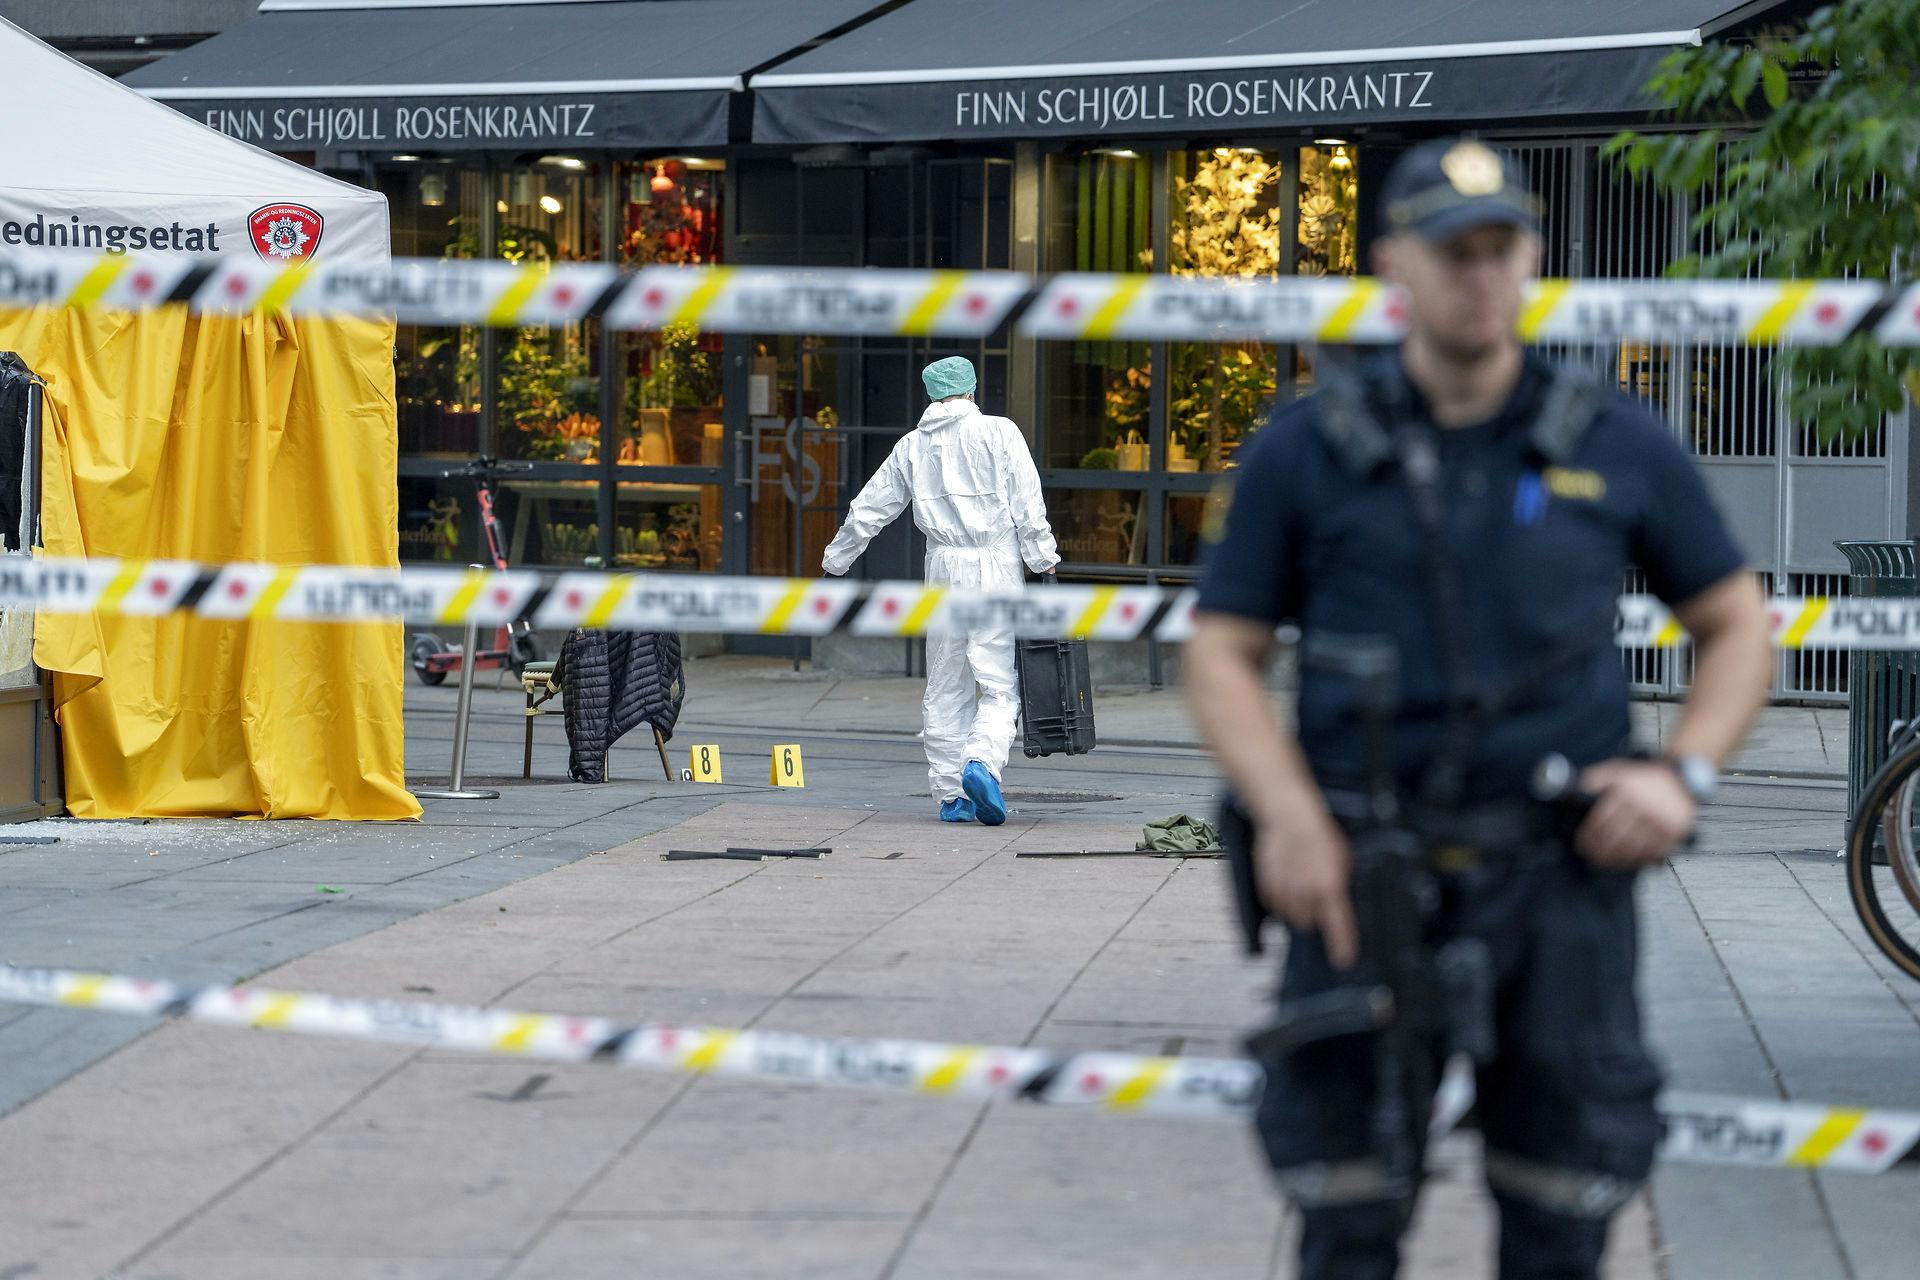 Flere skud blev affyret ved London pub i Oslo i nat.